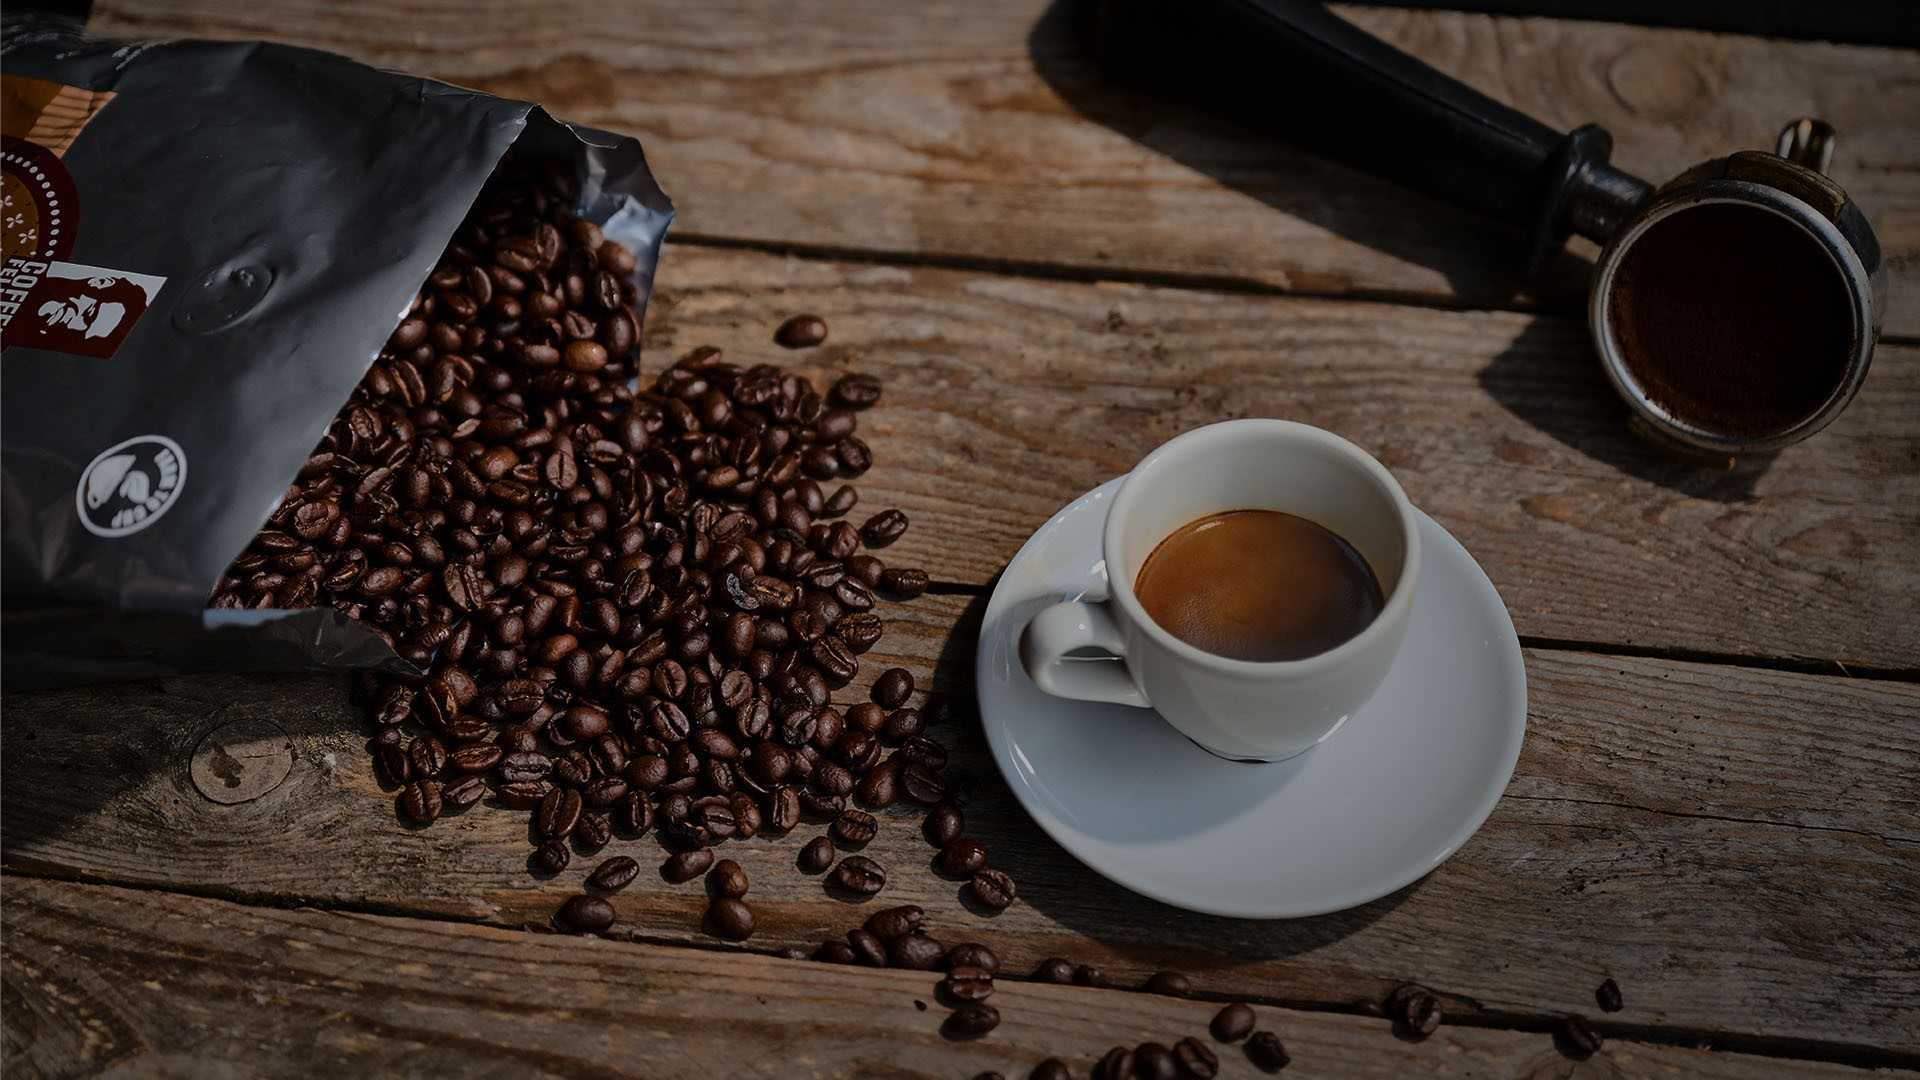 Geöffnete Tüte mit Kaffeebohnen, die auf dem Tisch liegt und Bohnen kommen raus, daneben steht ein Espresso 